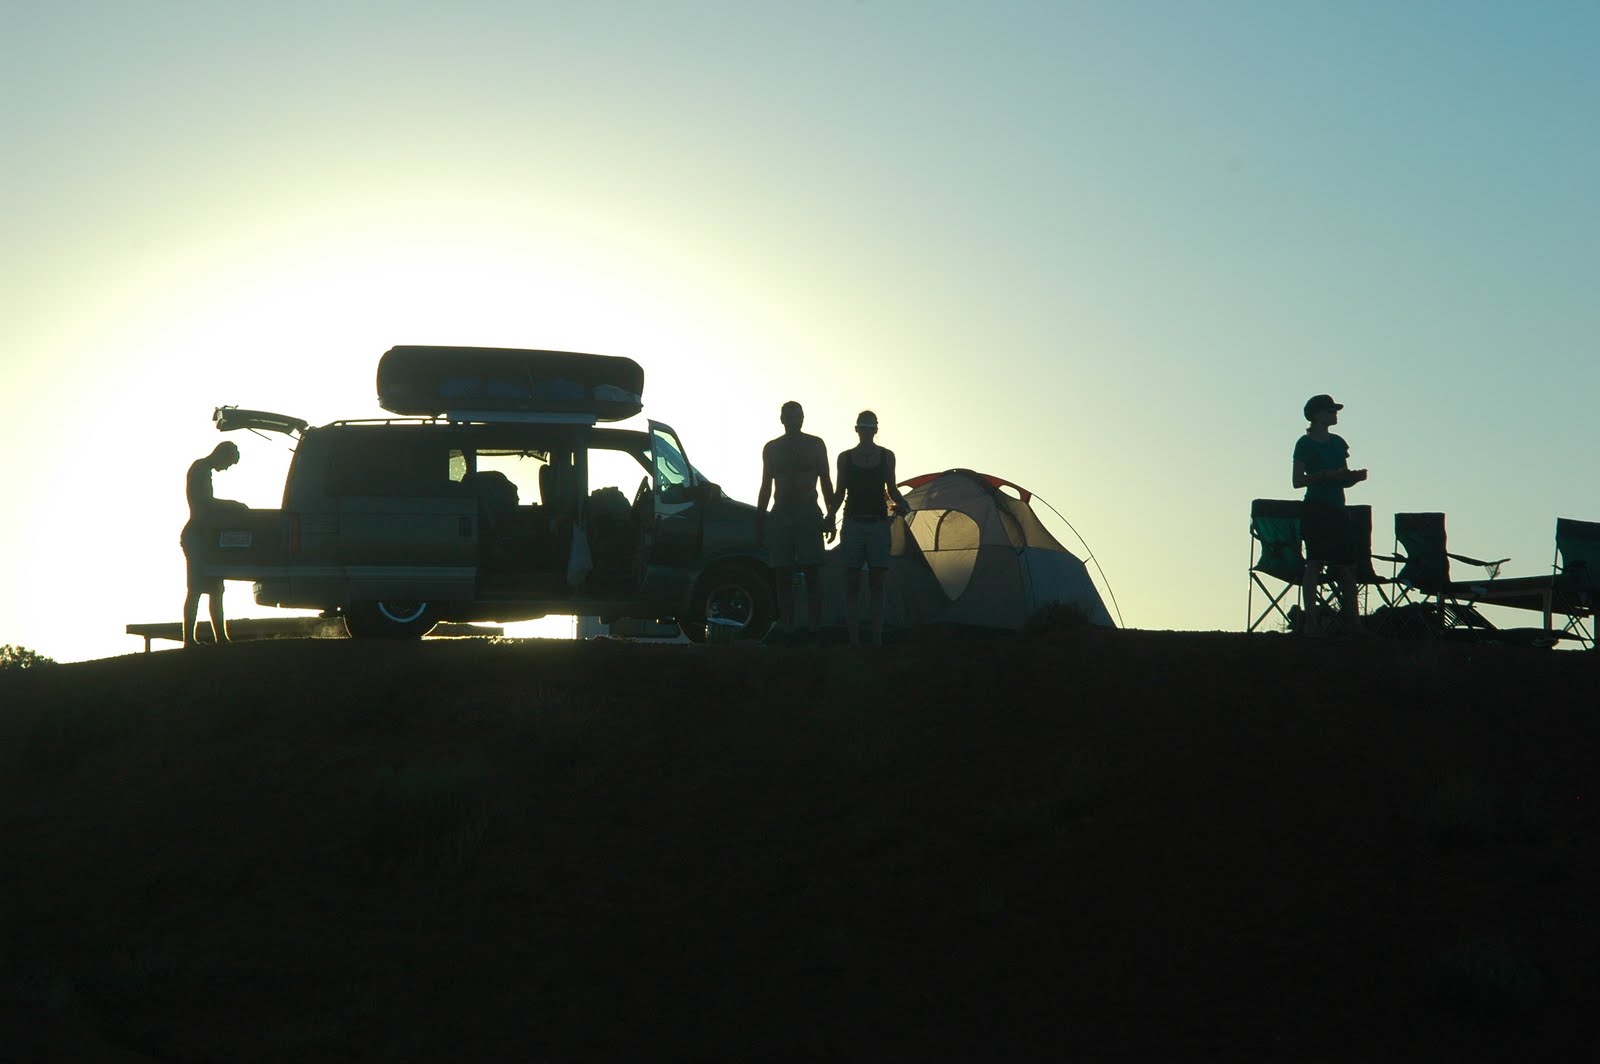 Lost Campers Campervan and Passenger Van Rental | 8820 aviation blvd, los angeles, CA, 90301 | +1 (415) 386-2693